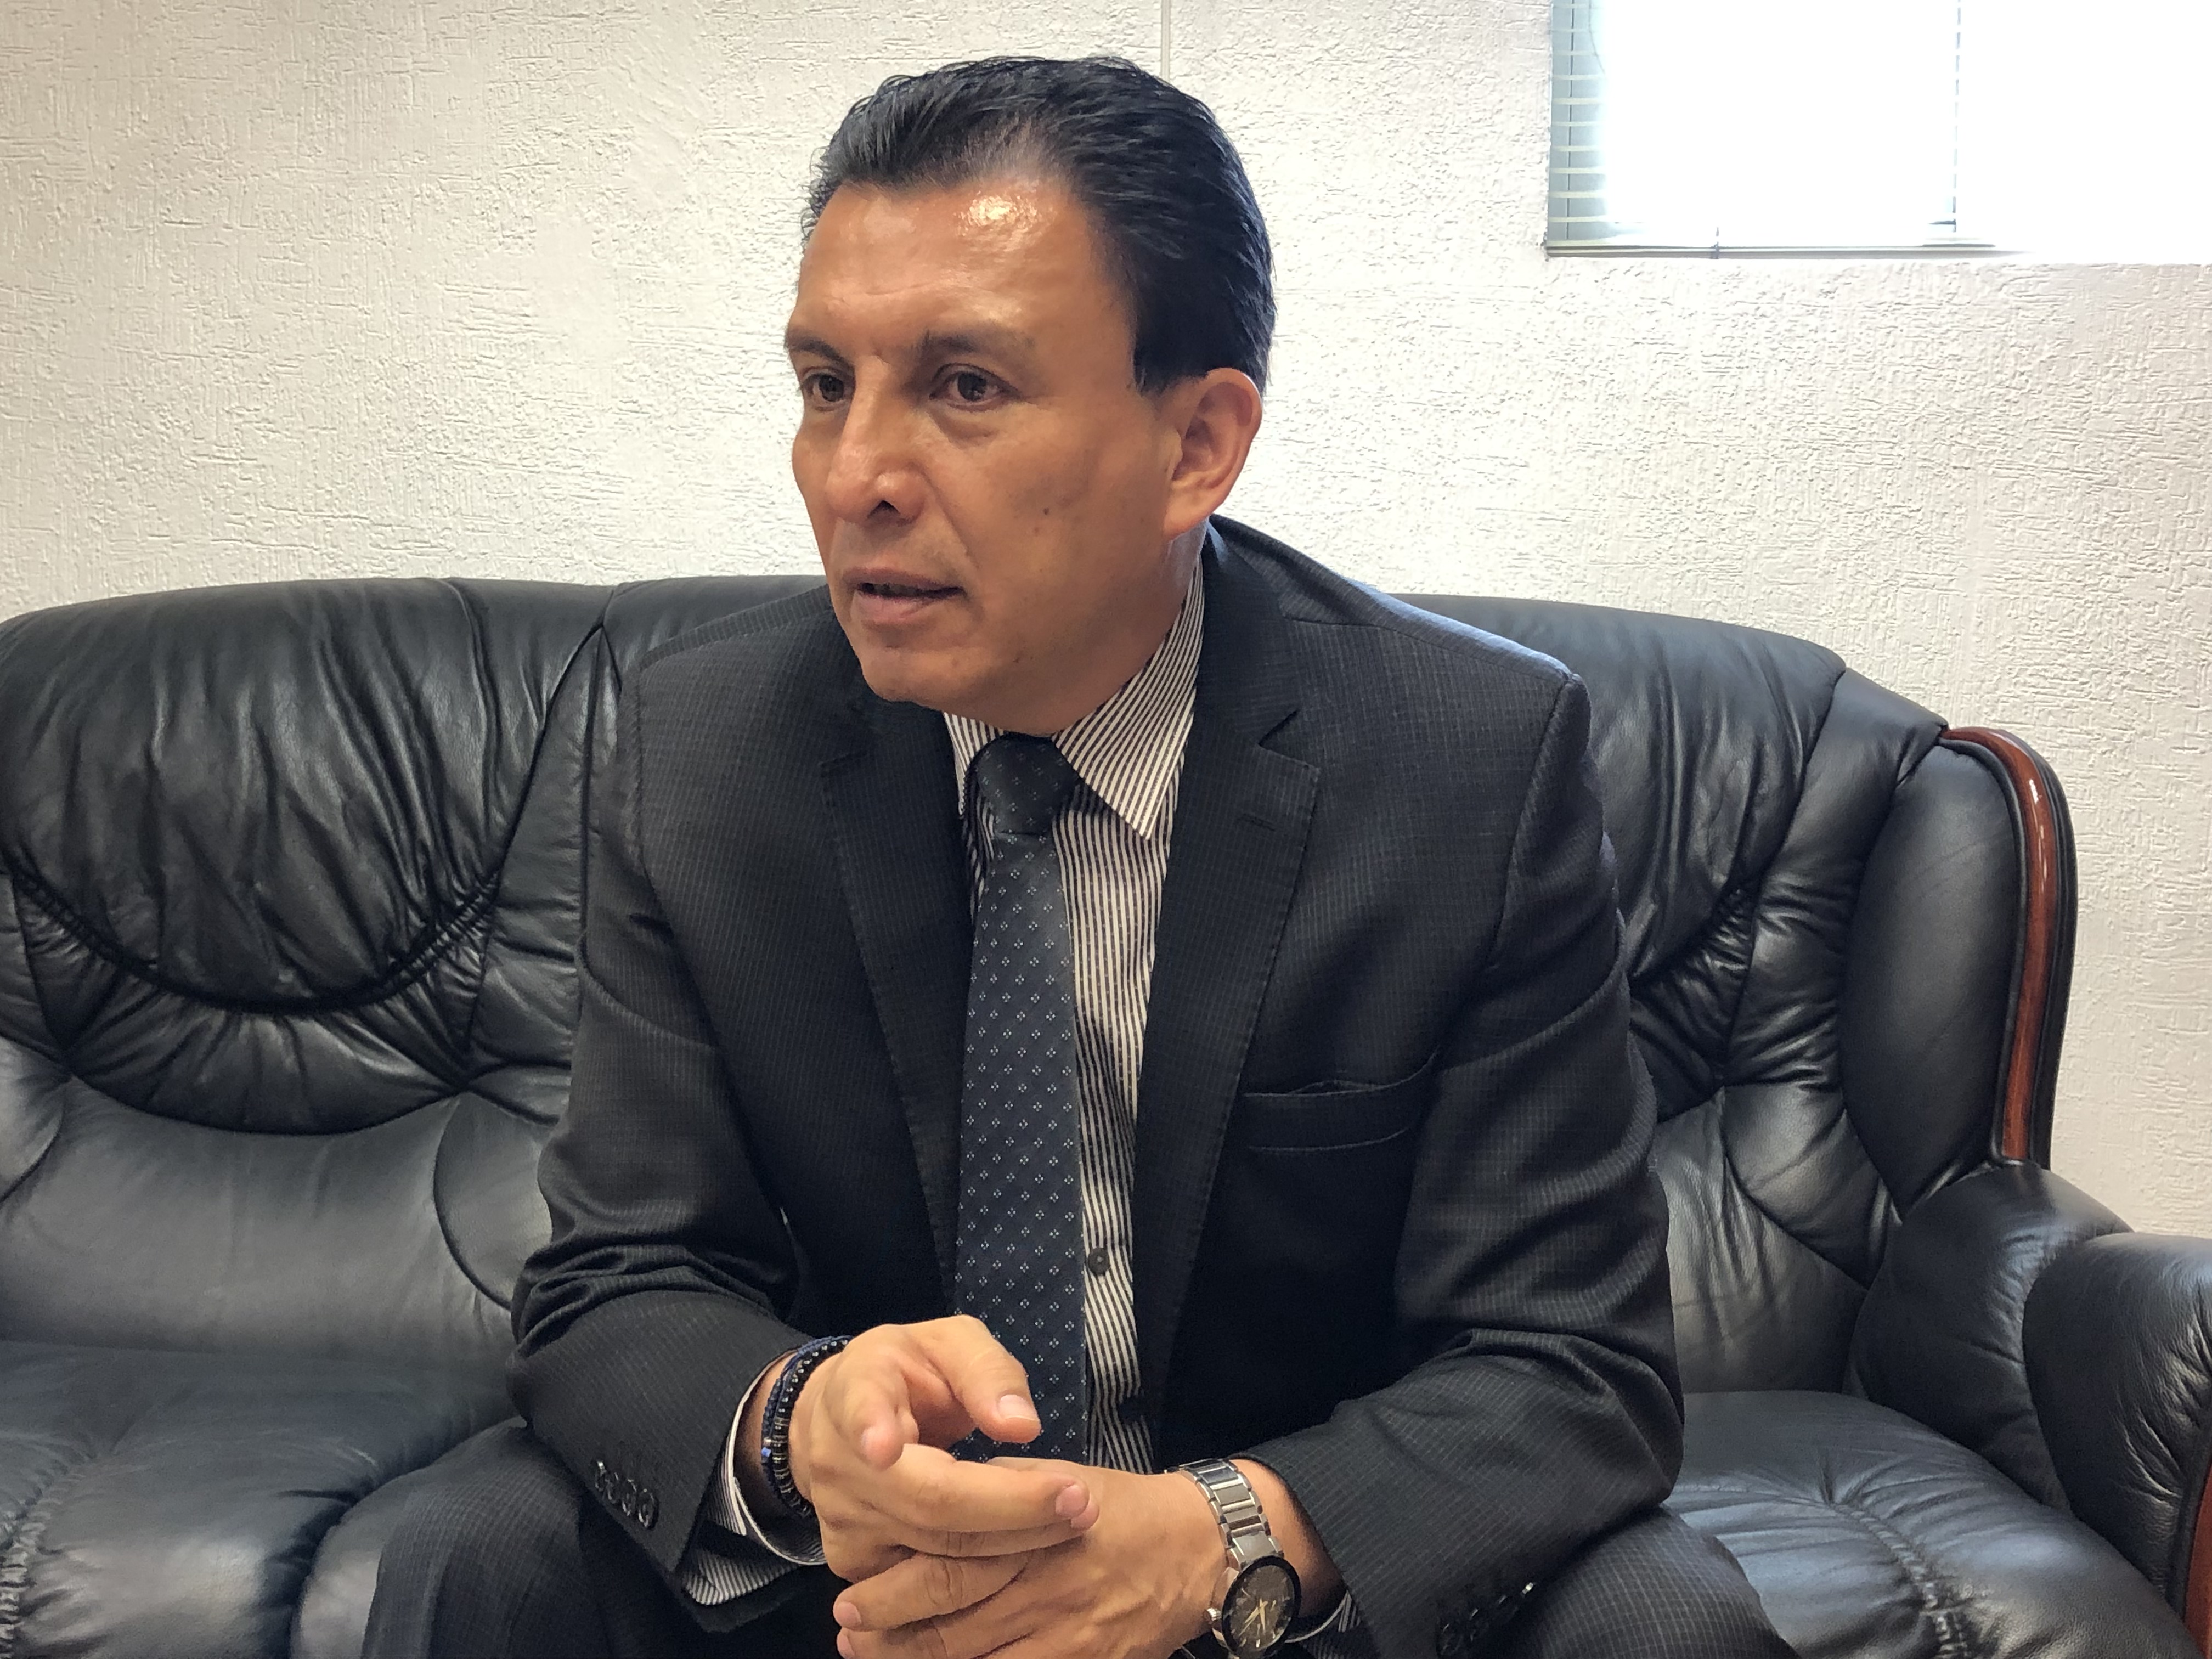  “Rumores, la supuesta identidad de víctimas de ataque en Pueblo Nuevo”: SSC